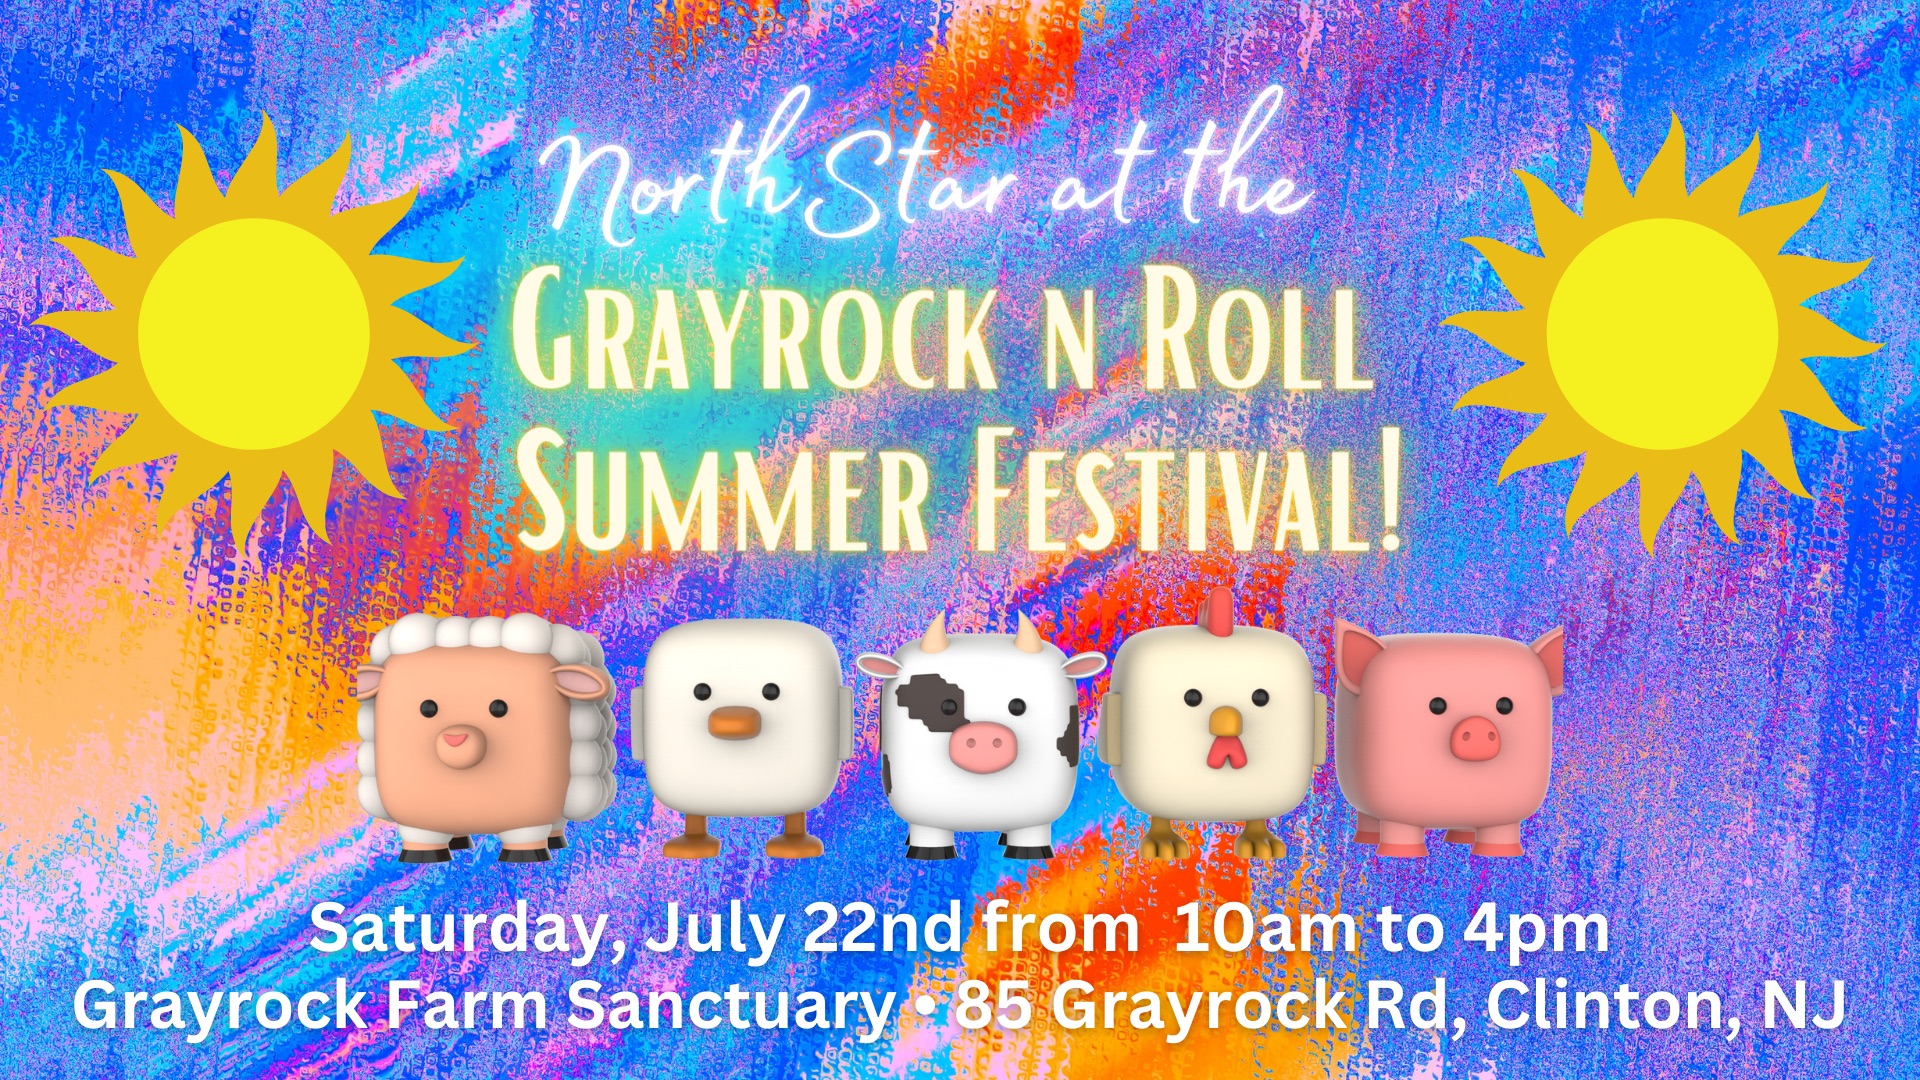 NorthStar at GrayRock N Roll Summer Festival!